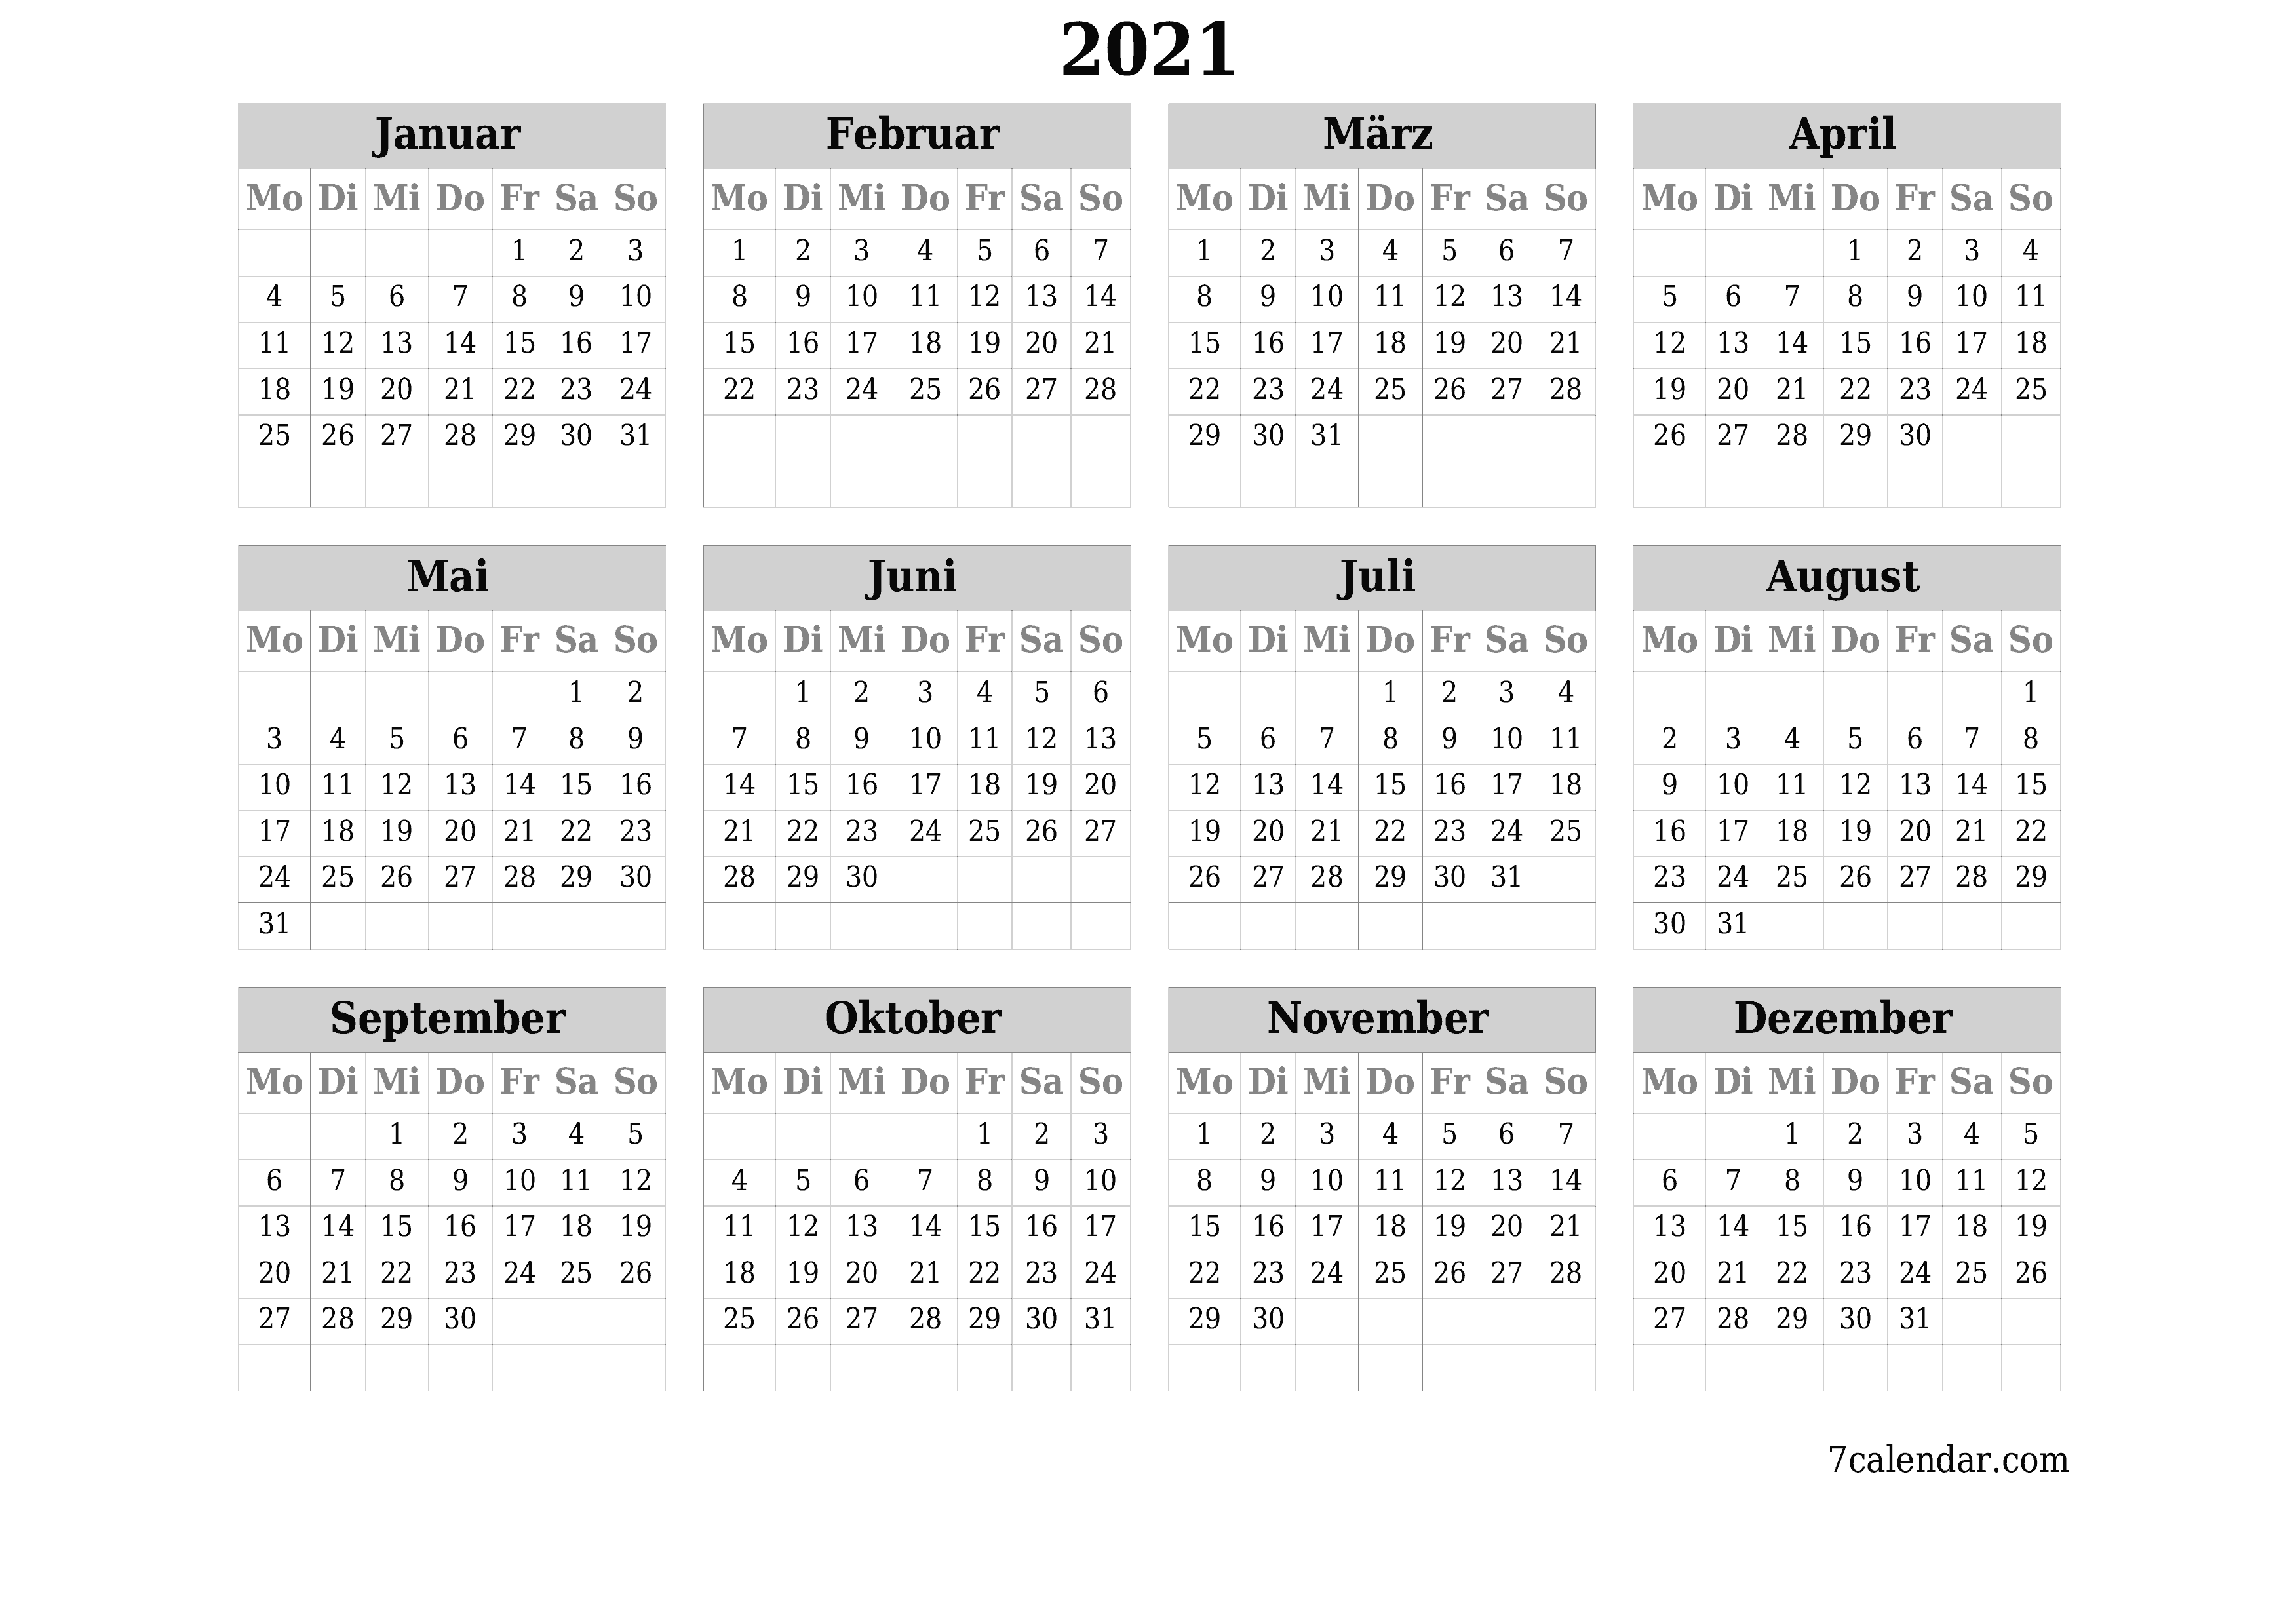 Jahresplanerkalender für das Jahr 2021 mit Notizen leeren, speichern und als PDF PNG German - 7calendar.com drucken